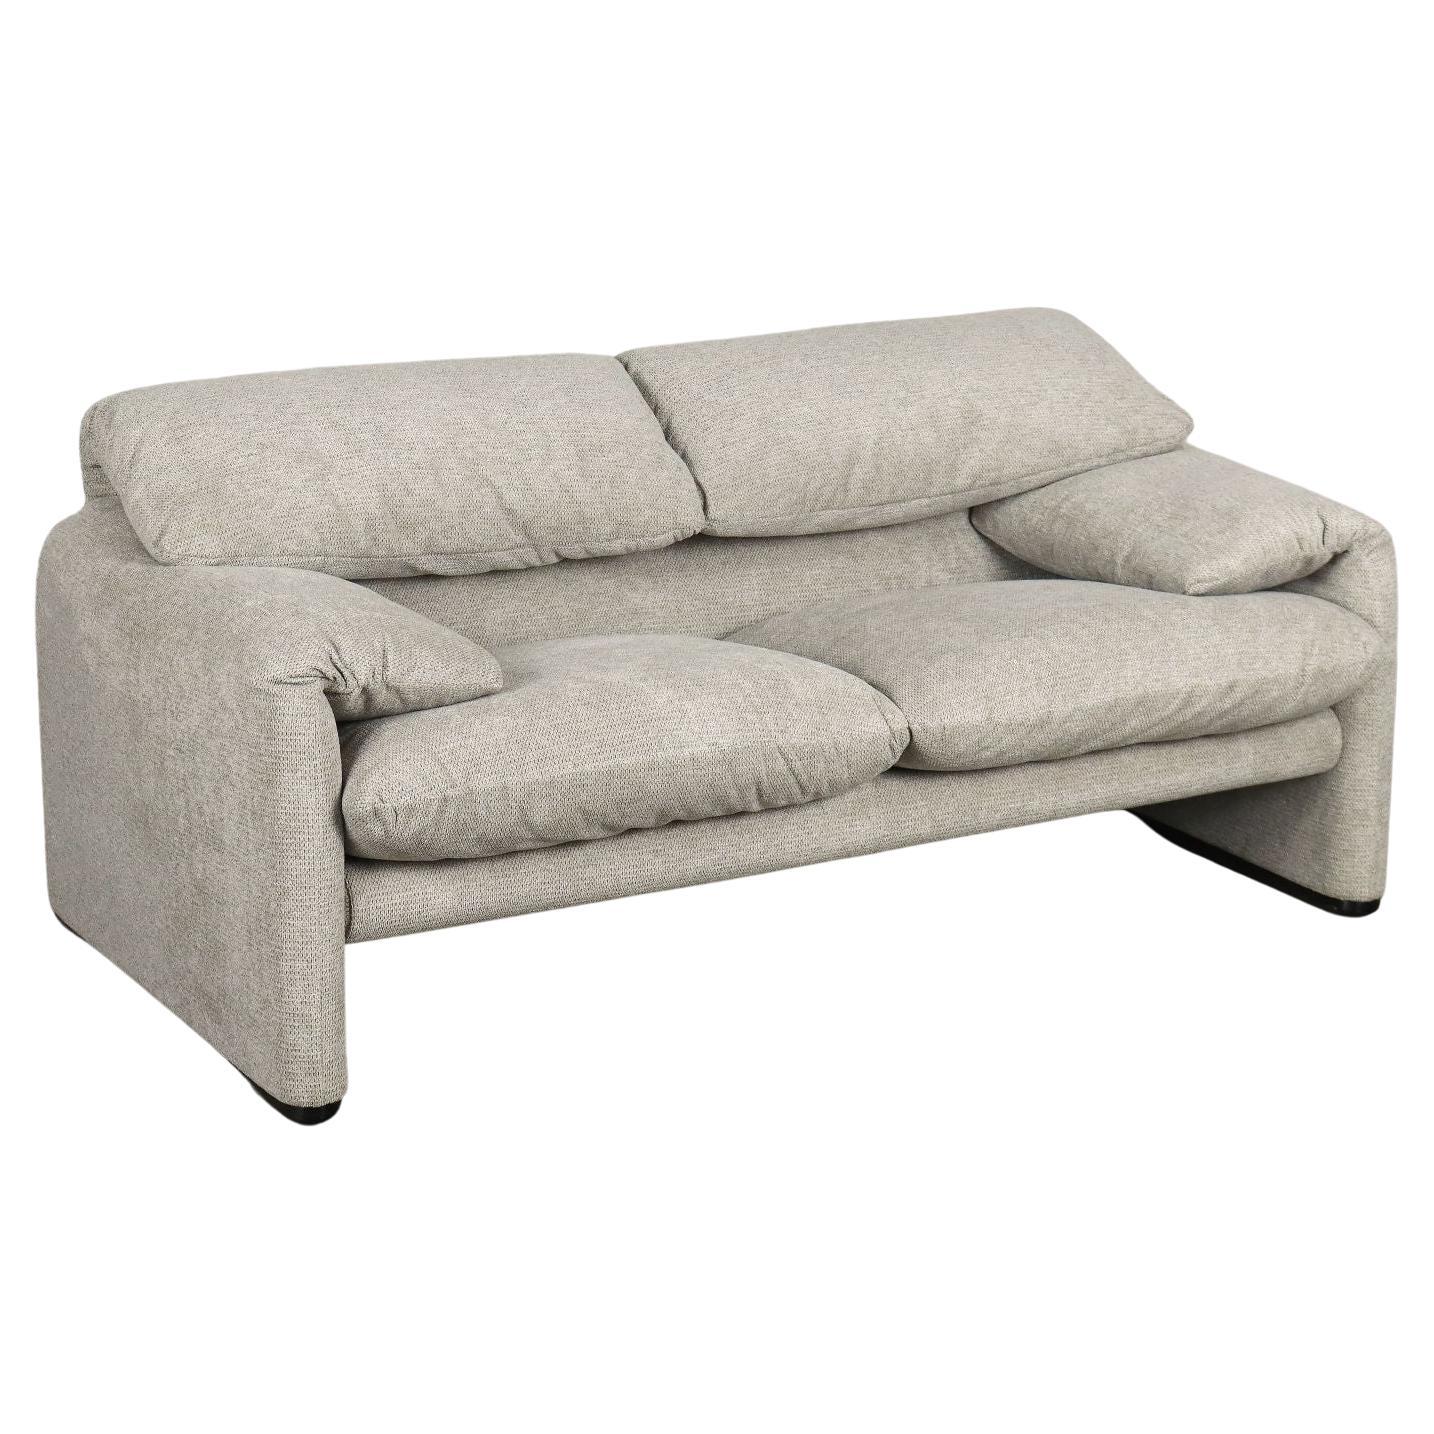 Maralunga sofa by Vico Magistretti for Cassina Anni 80 For Sale